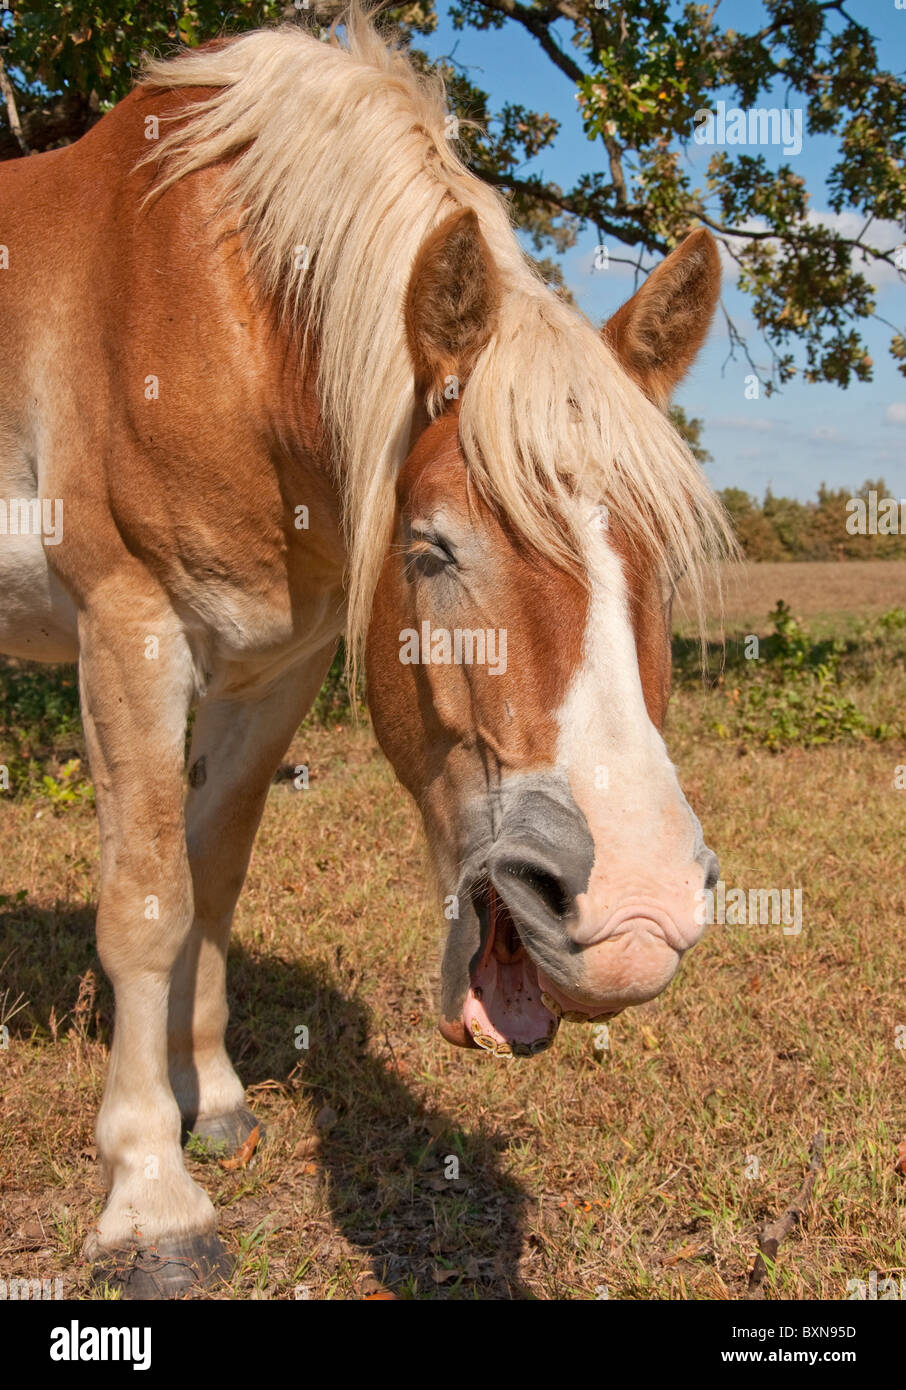 Close up image of a yawning Belgian Draft horse Stock Photo